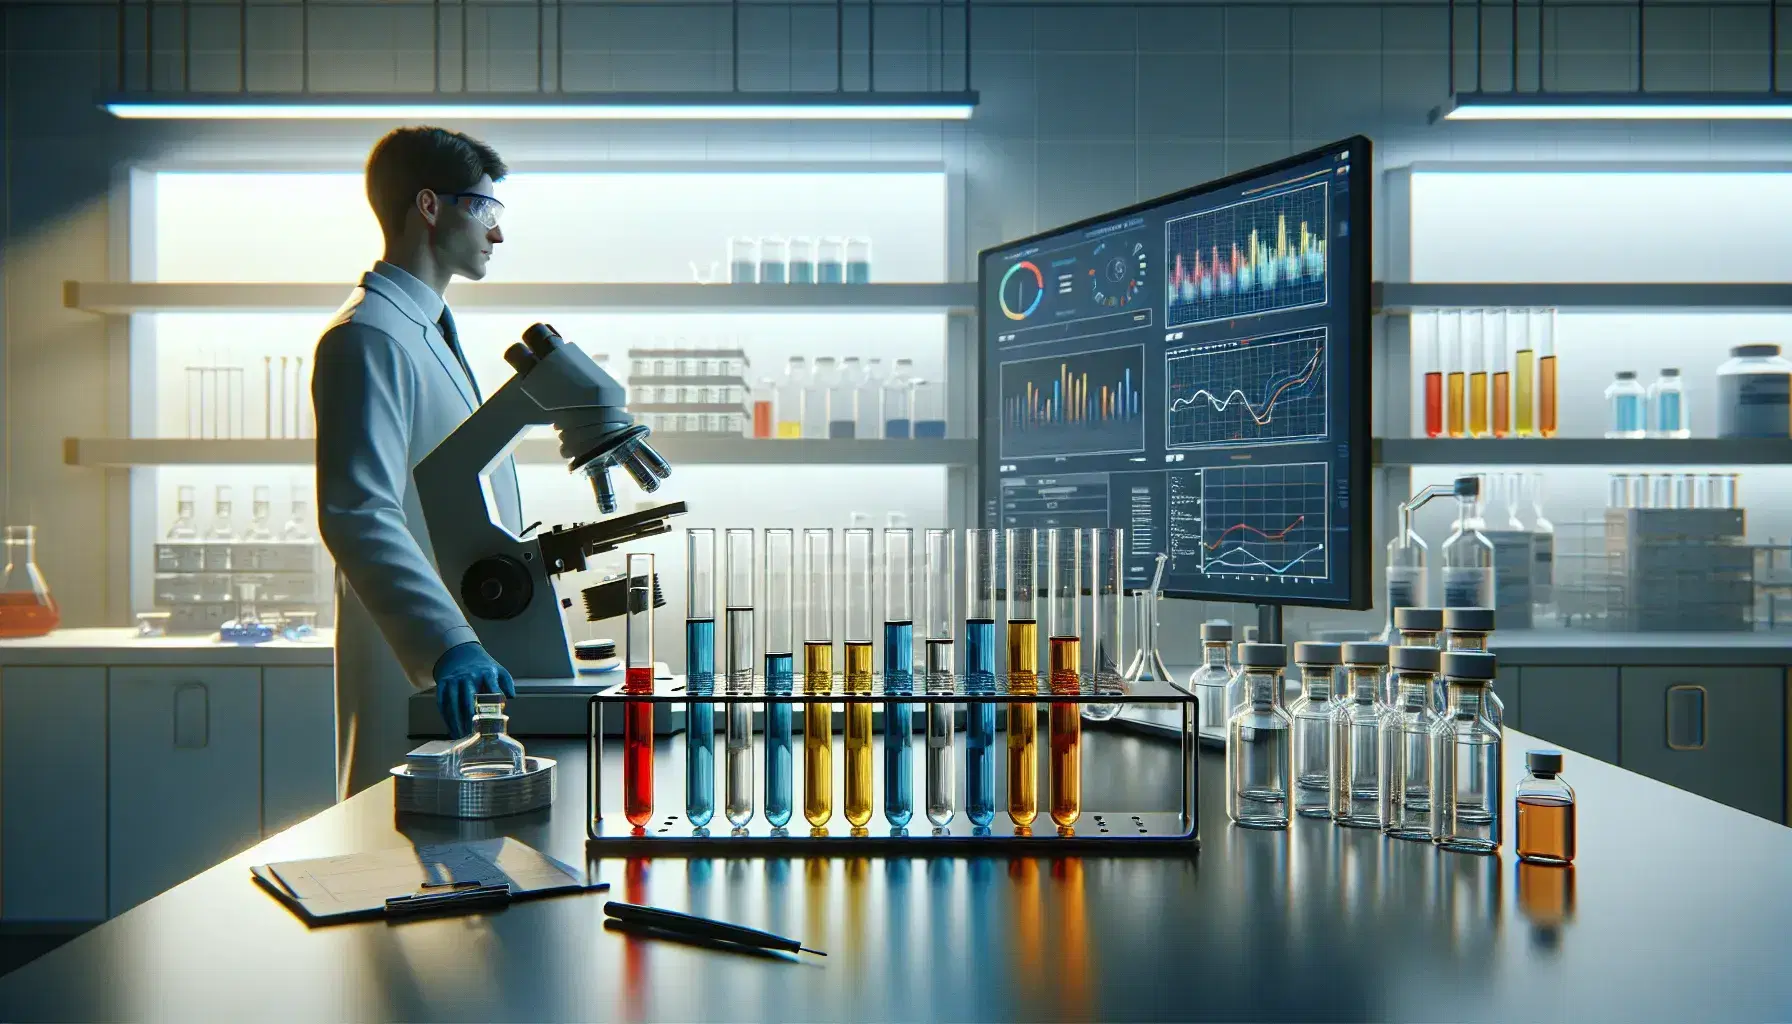 Laboratorio científico con tubos de ensayo de colores en soporte metálico, microscopio y persona analizando gráficos en computadora.